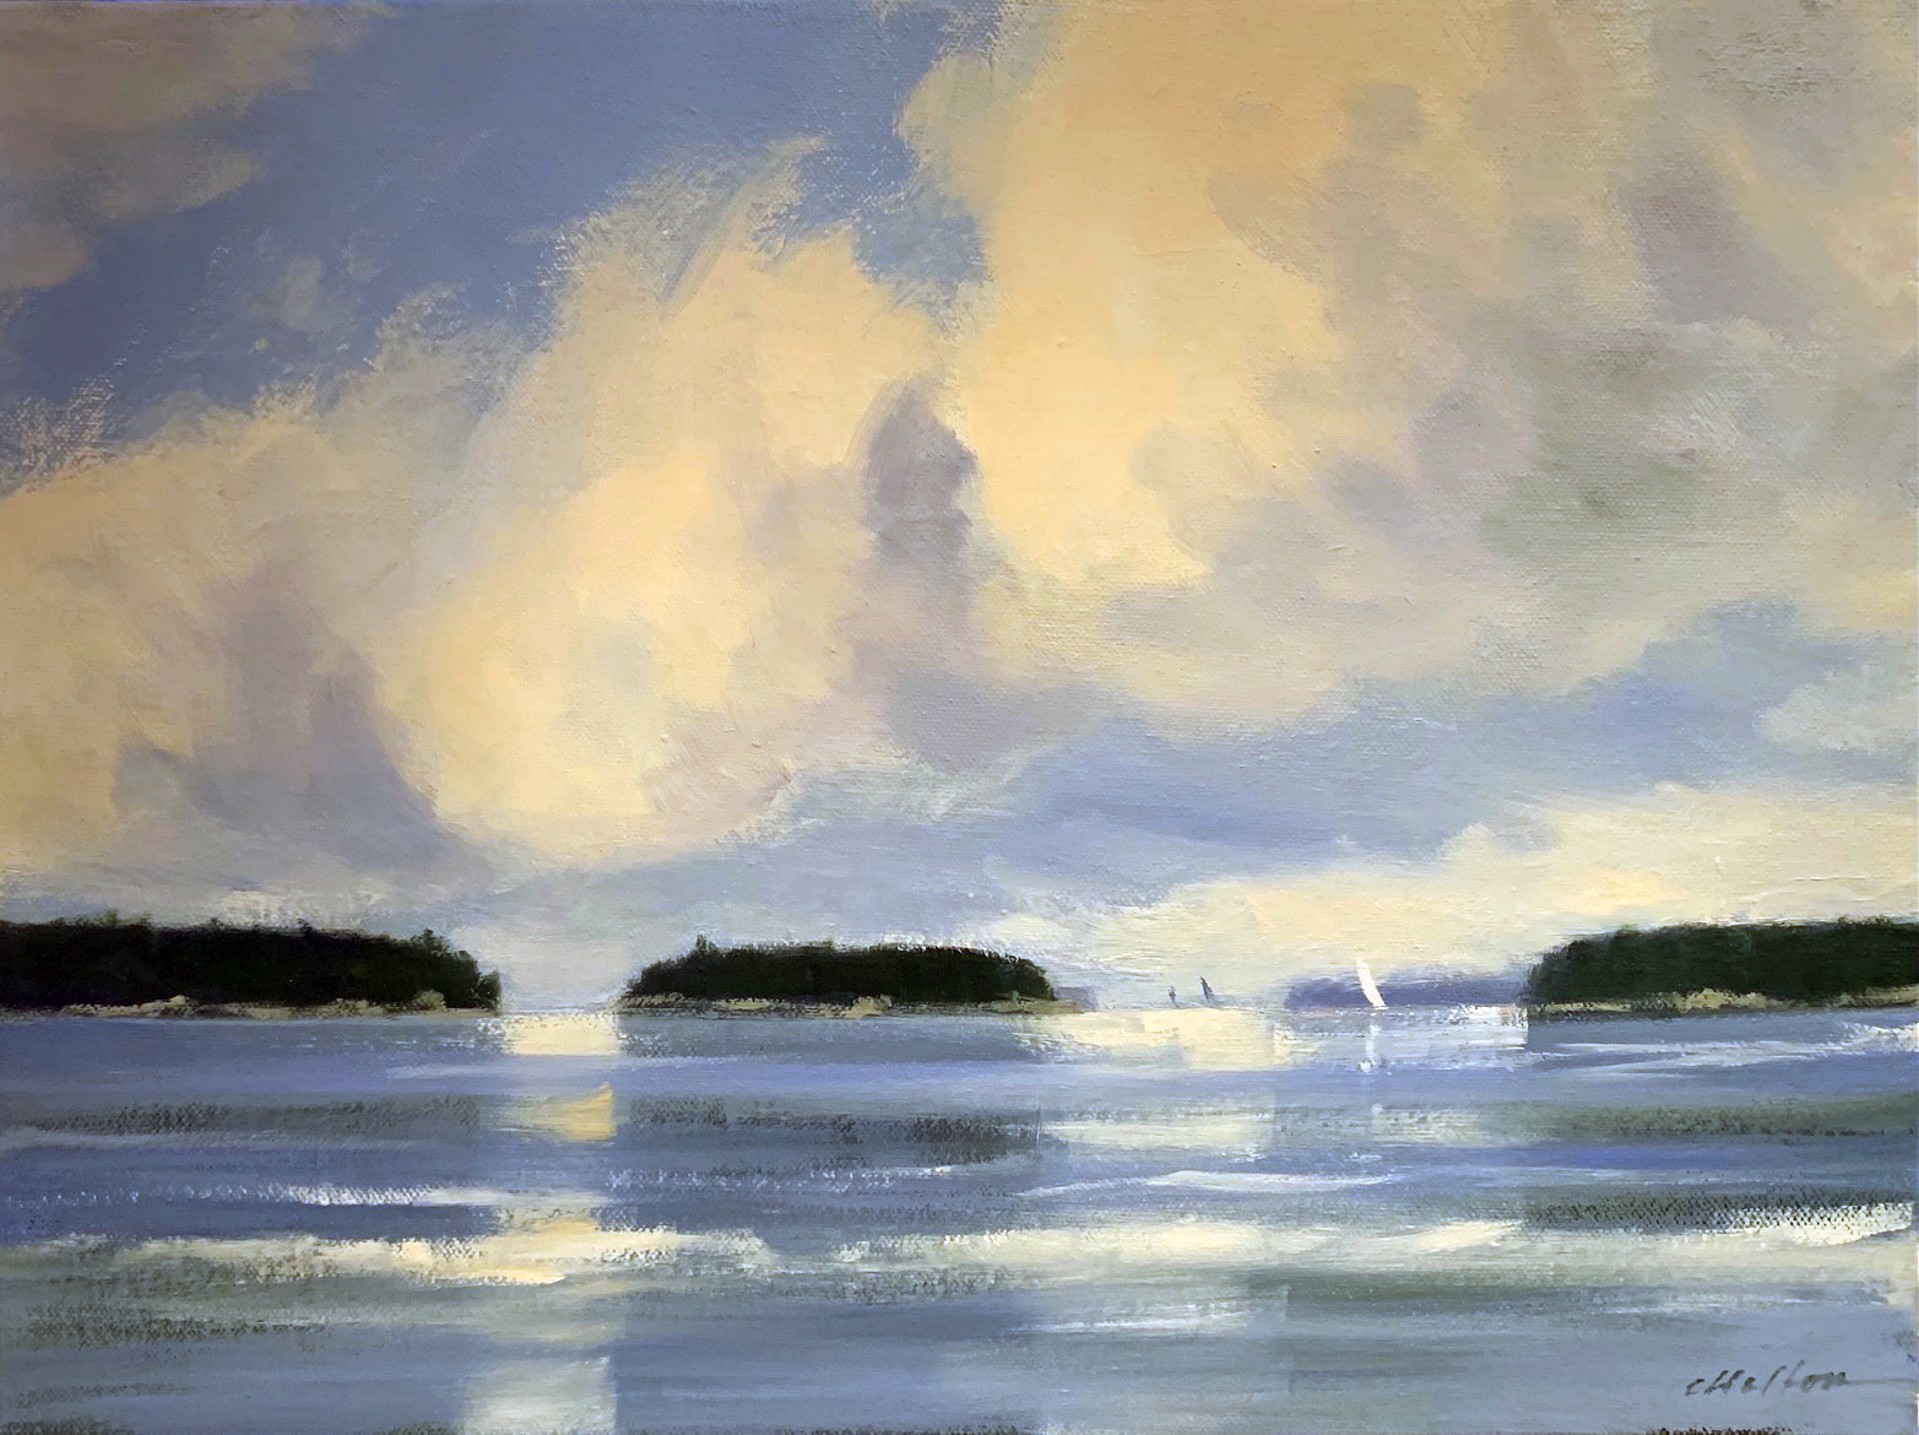 Sailing in the Deer Isle Thoroughfare by Carolyn Walton